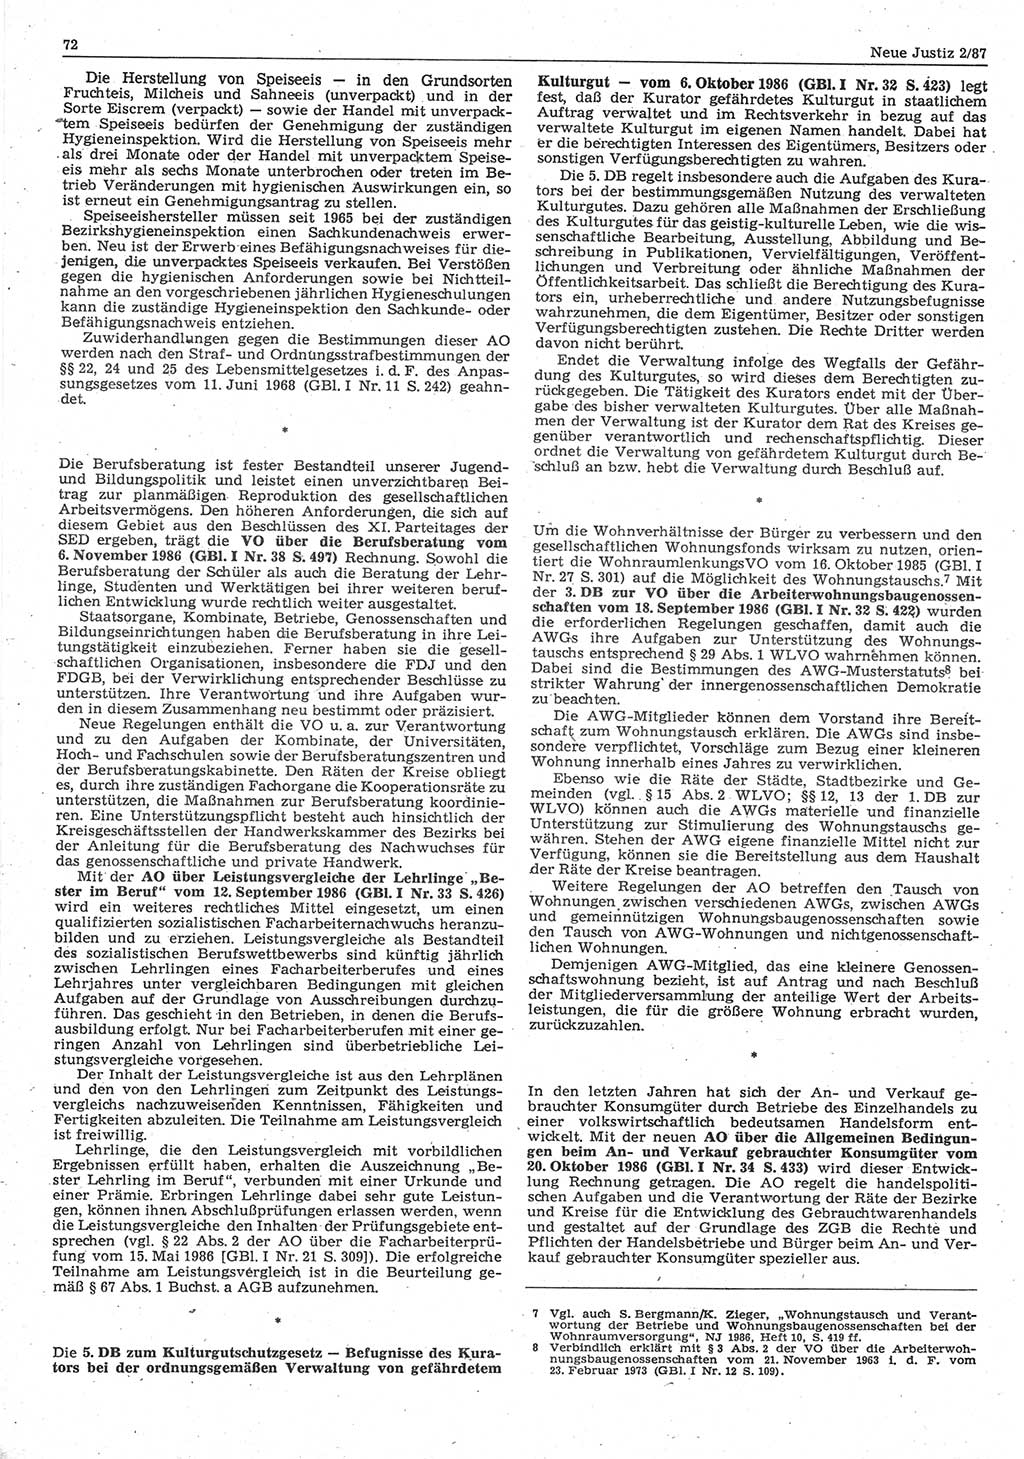 Neue Justiz (NJ), Zeitschrift für sozialistisches Recht und Gesetzlichkeit [Deutsche Demokratische Republik (DDR)], 41. Jahrgang 1987, Seite 72 (NJ DDR 1987, S. 72)